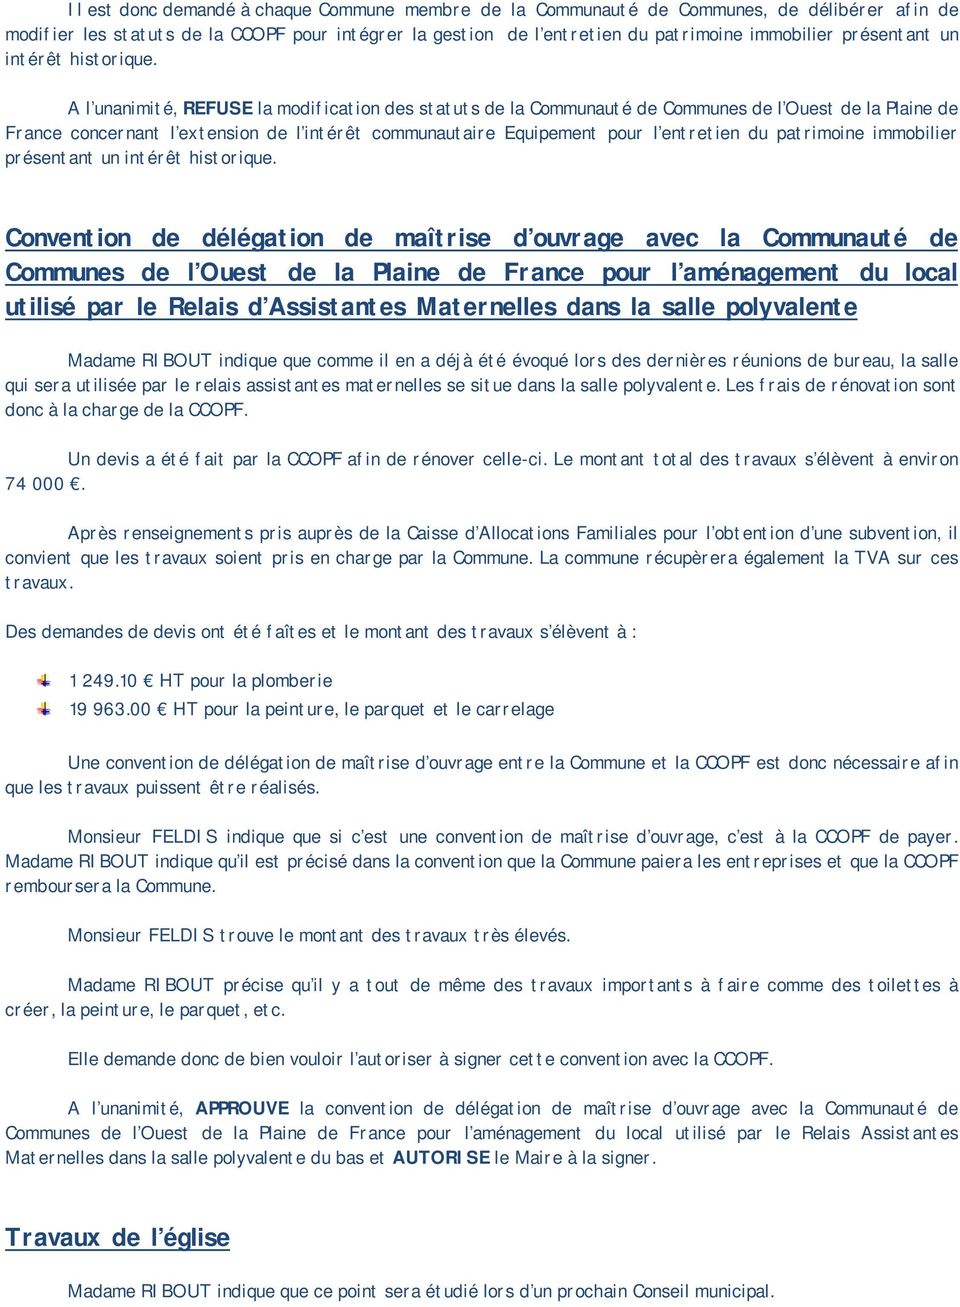 A l unanimité, REFUSE la modification des statuts de la Communauté de Communes de l Ouest de la Plaine de France concernant l extension de l intérêt communautaire Equipement pour l entretien du